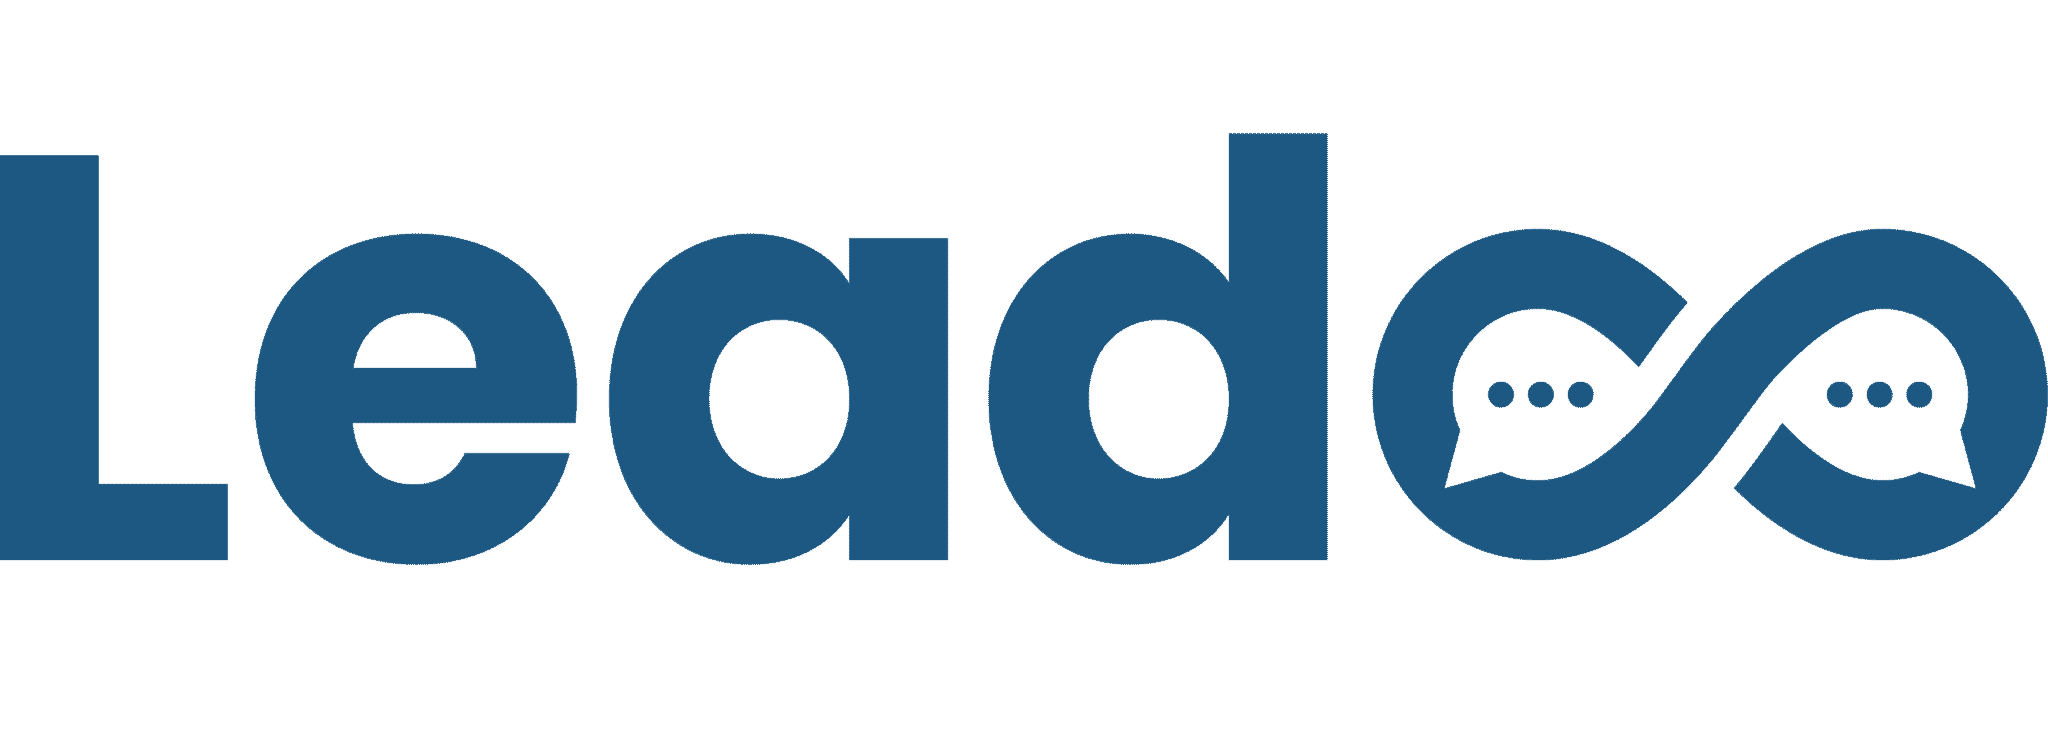 Leadoo - Conversion Platform